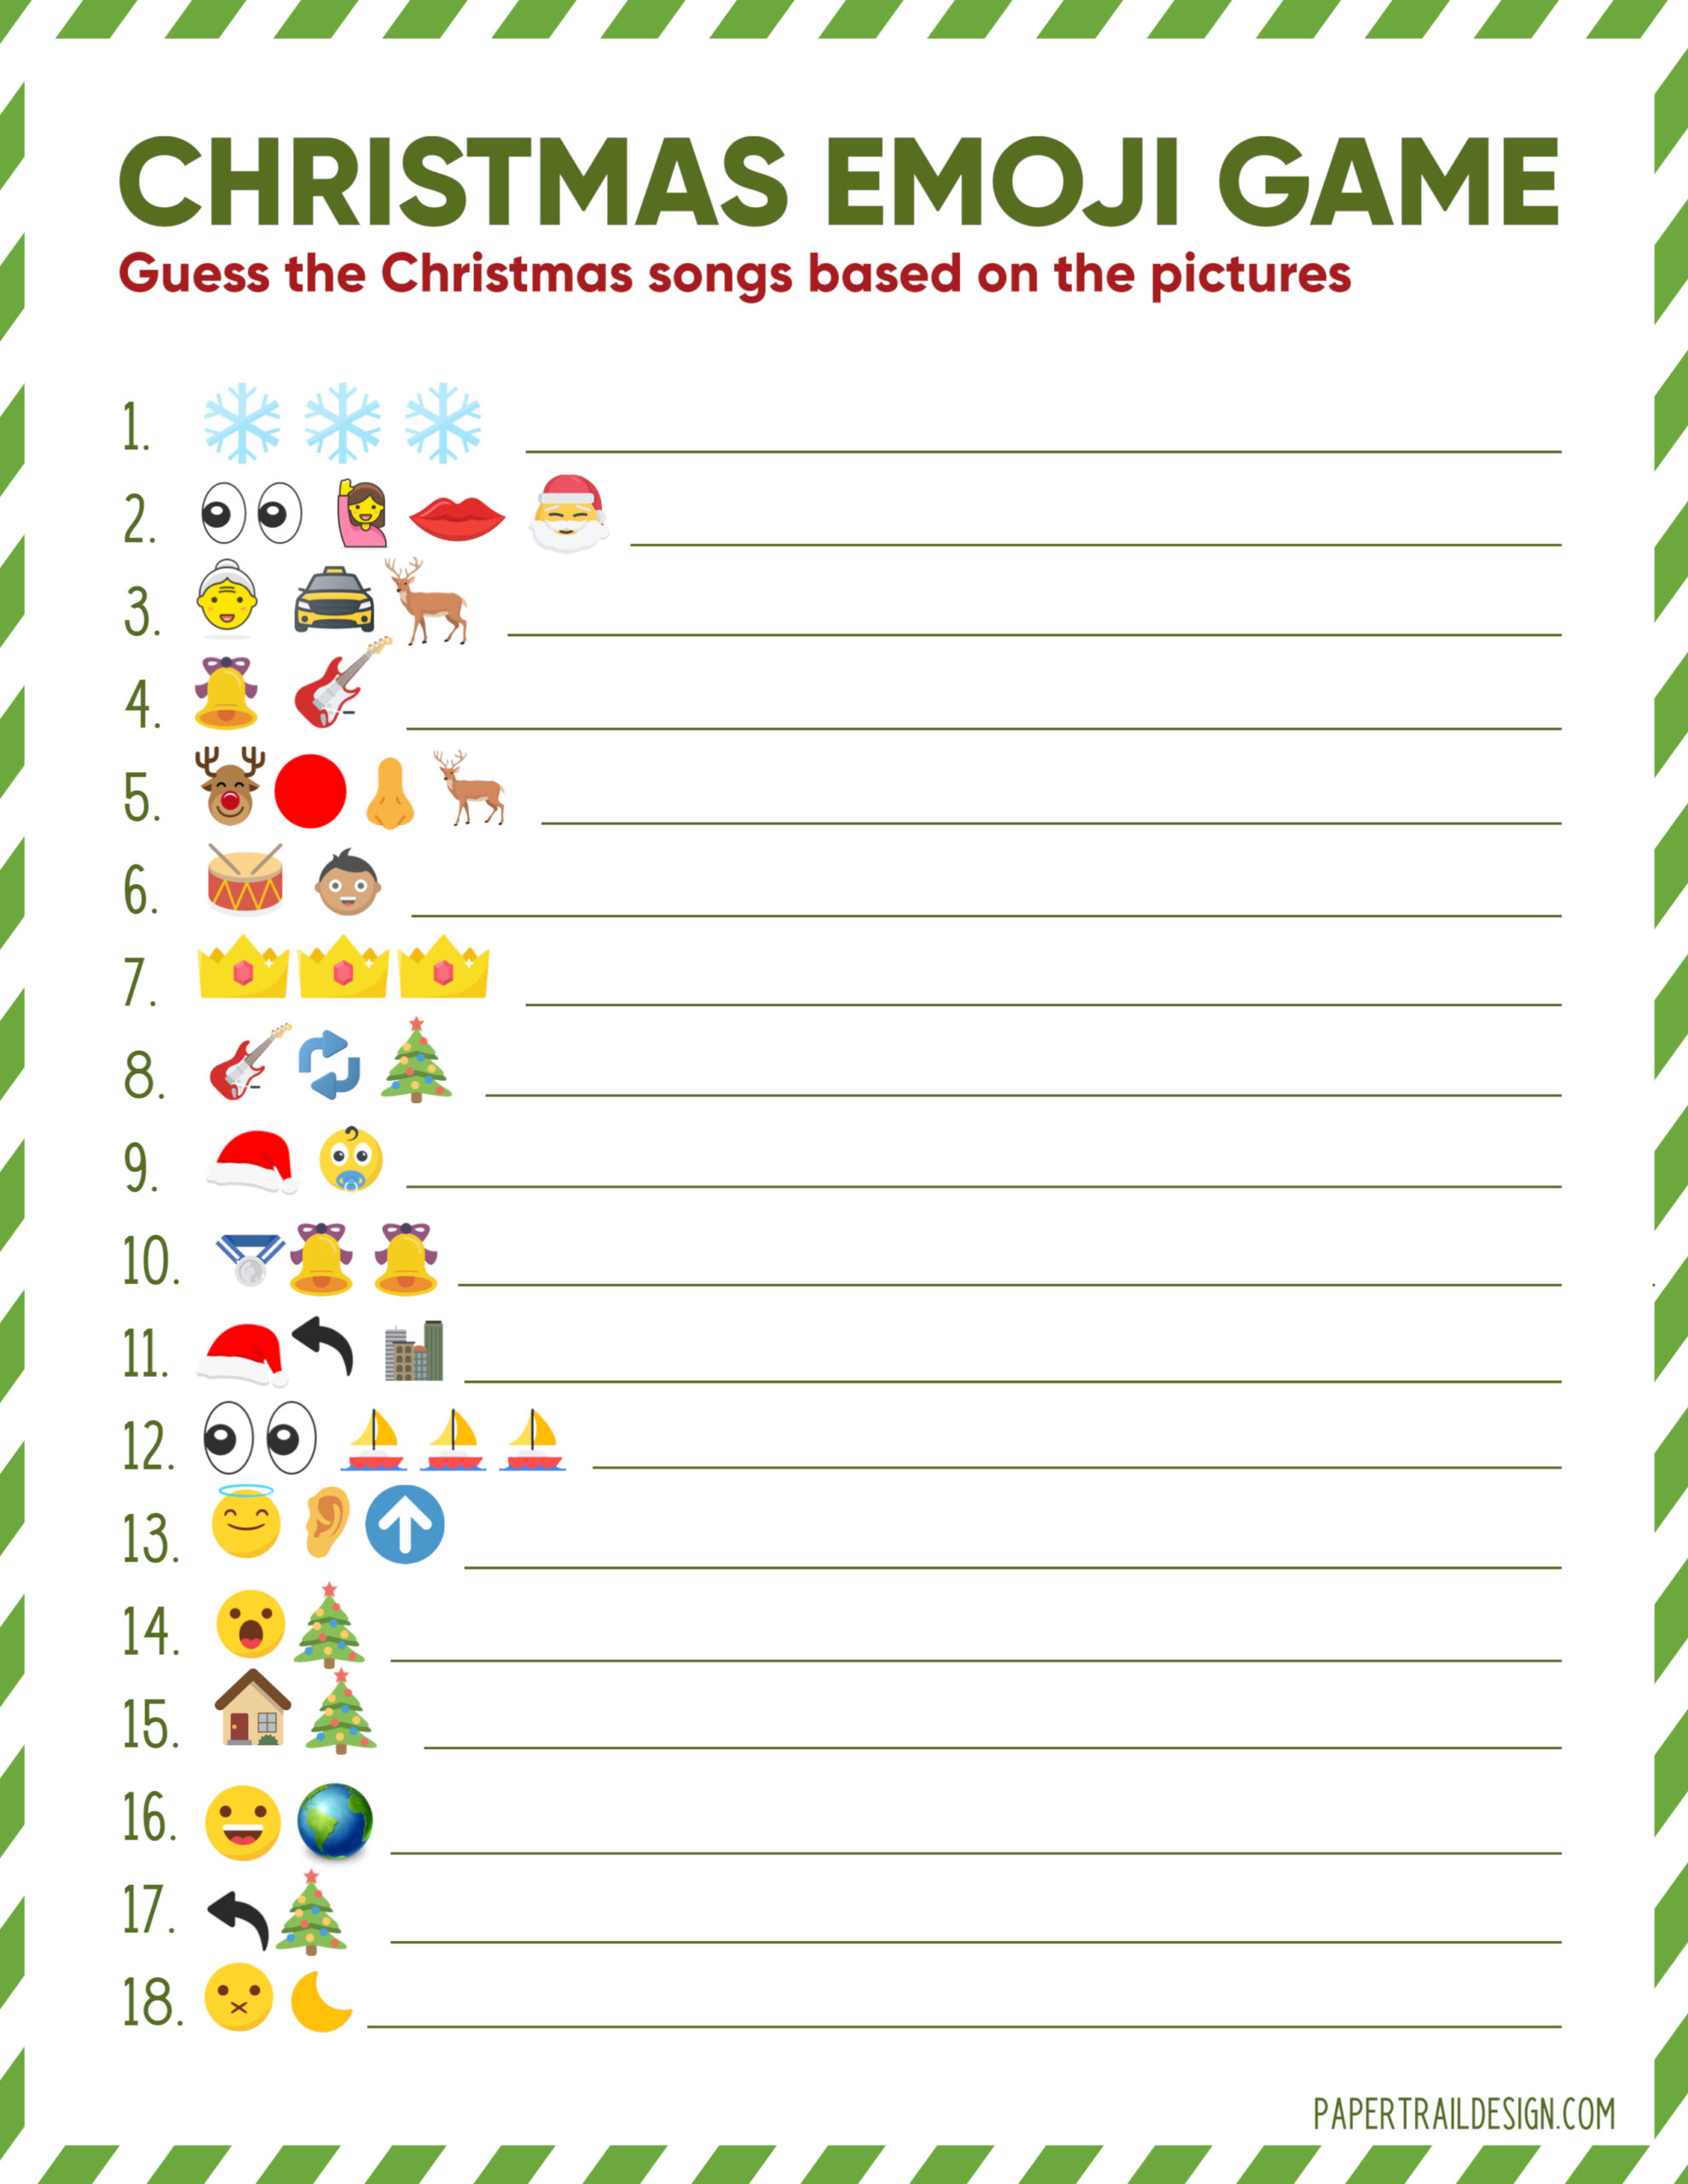 Christmas Emoji Game Printable Customize And Print